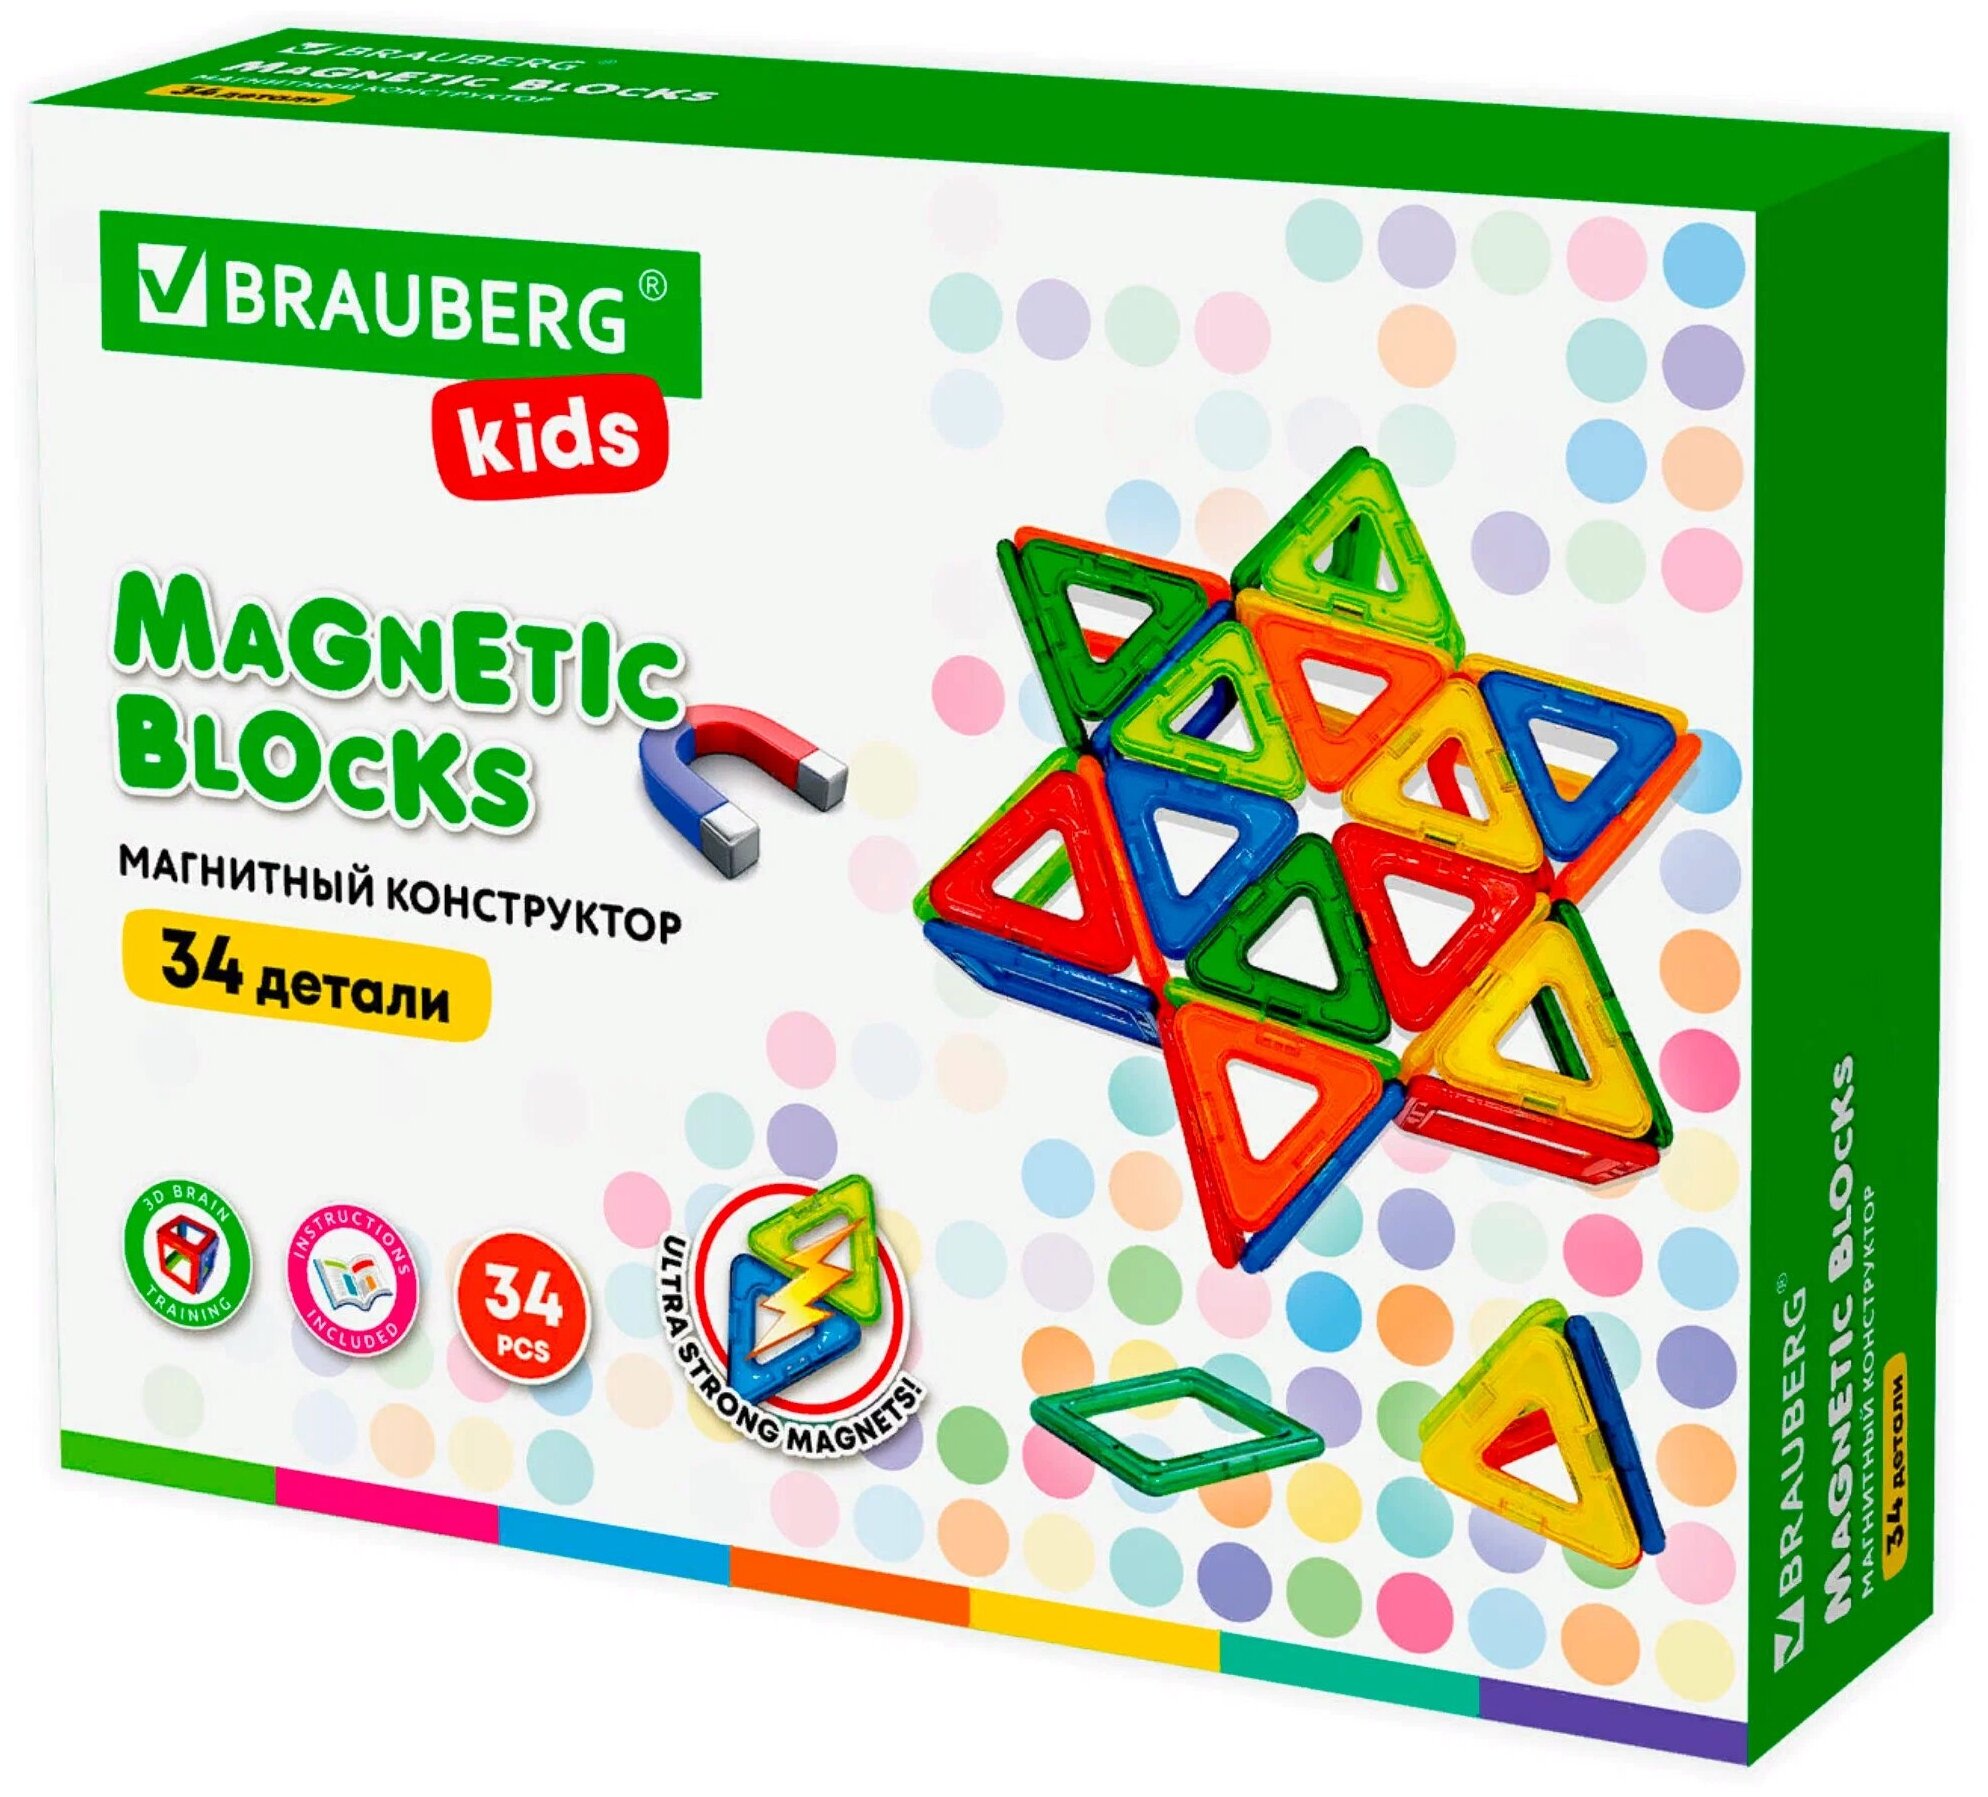 Магнитный конструктор BIG MAGNETIC BLOCKS-34 34 детали с колесной базой BRAUBERG KIDS, 1 шт